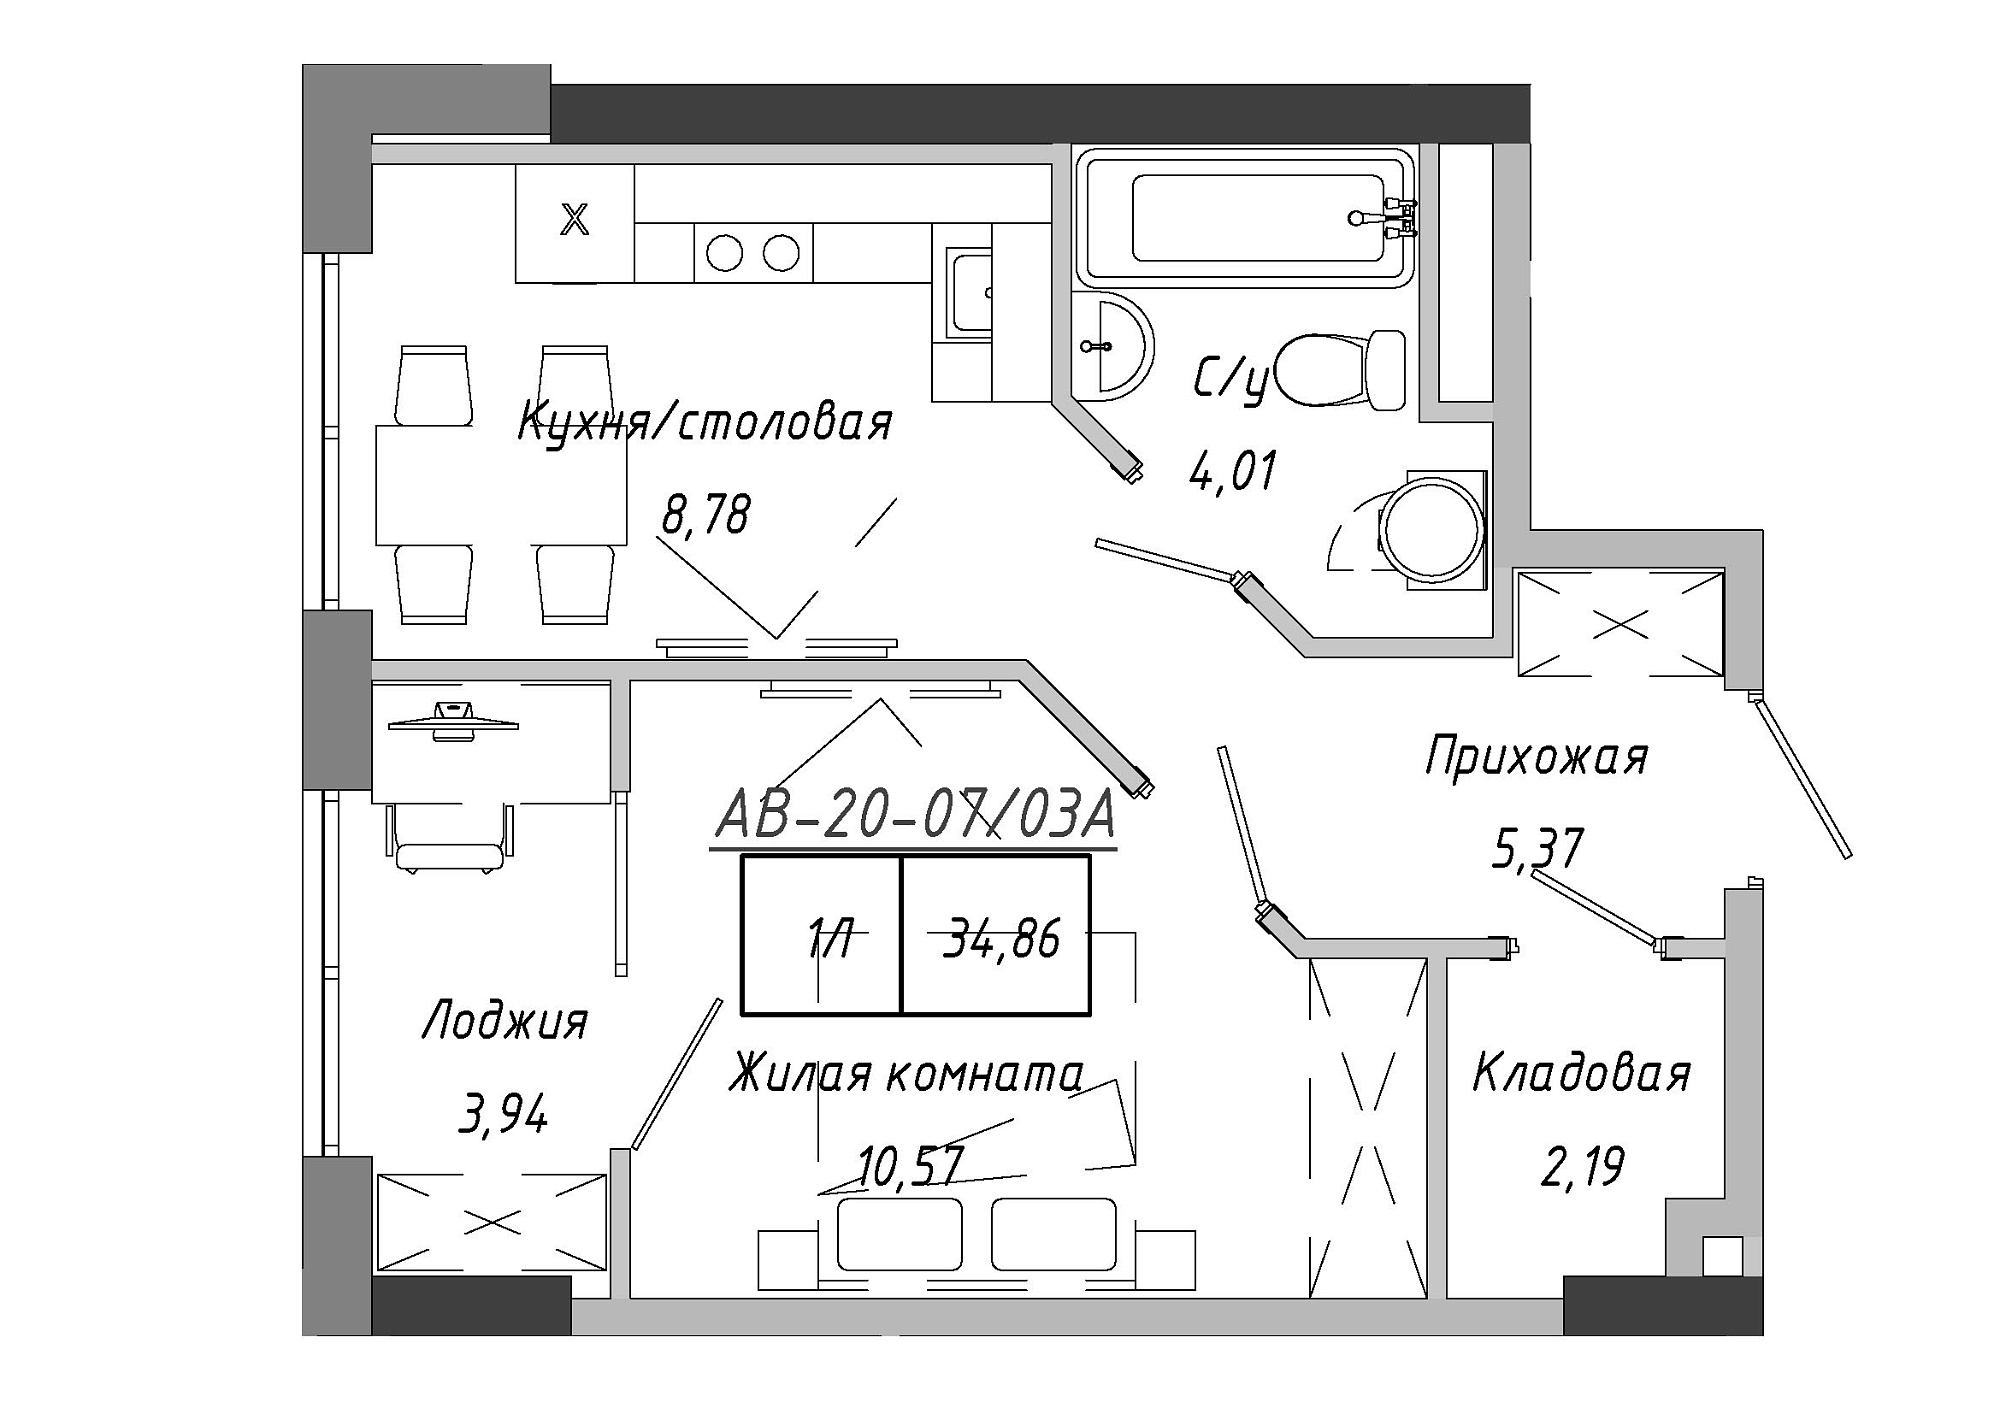 Планування 1-к квартира площею 35.26м2, AB-20-07/0003а.